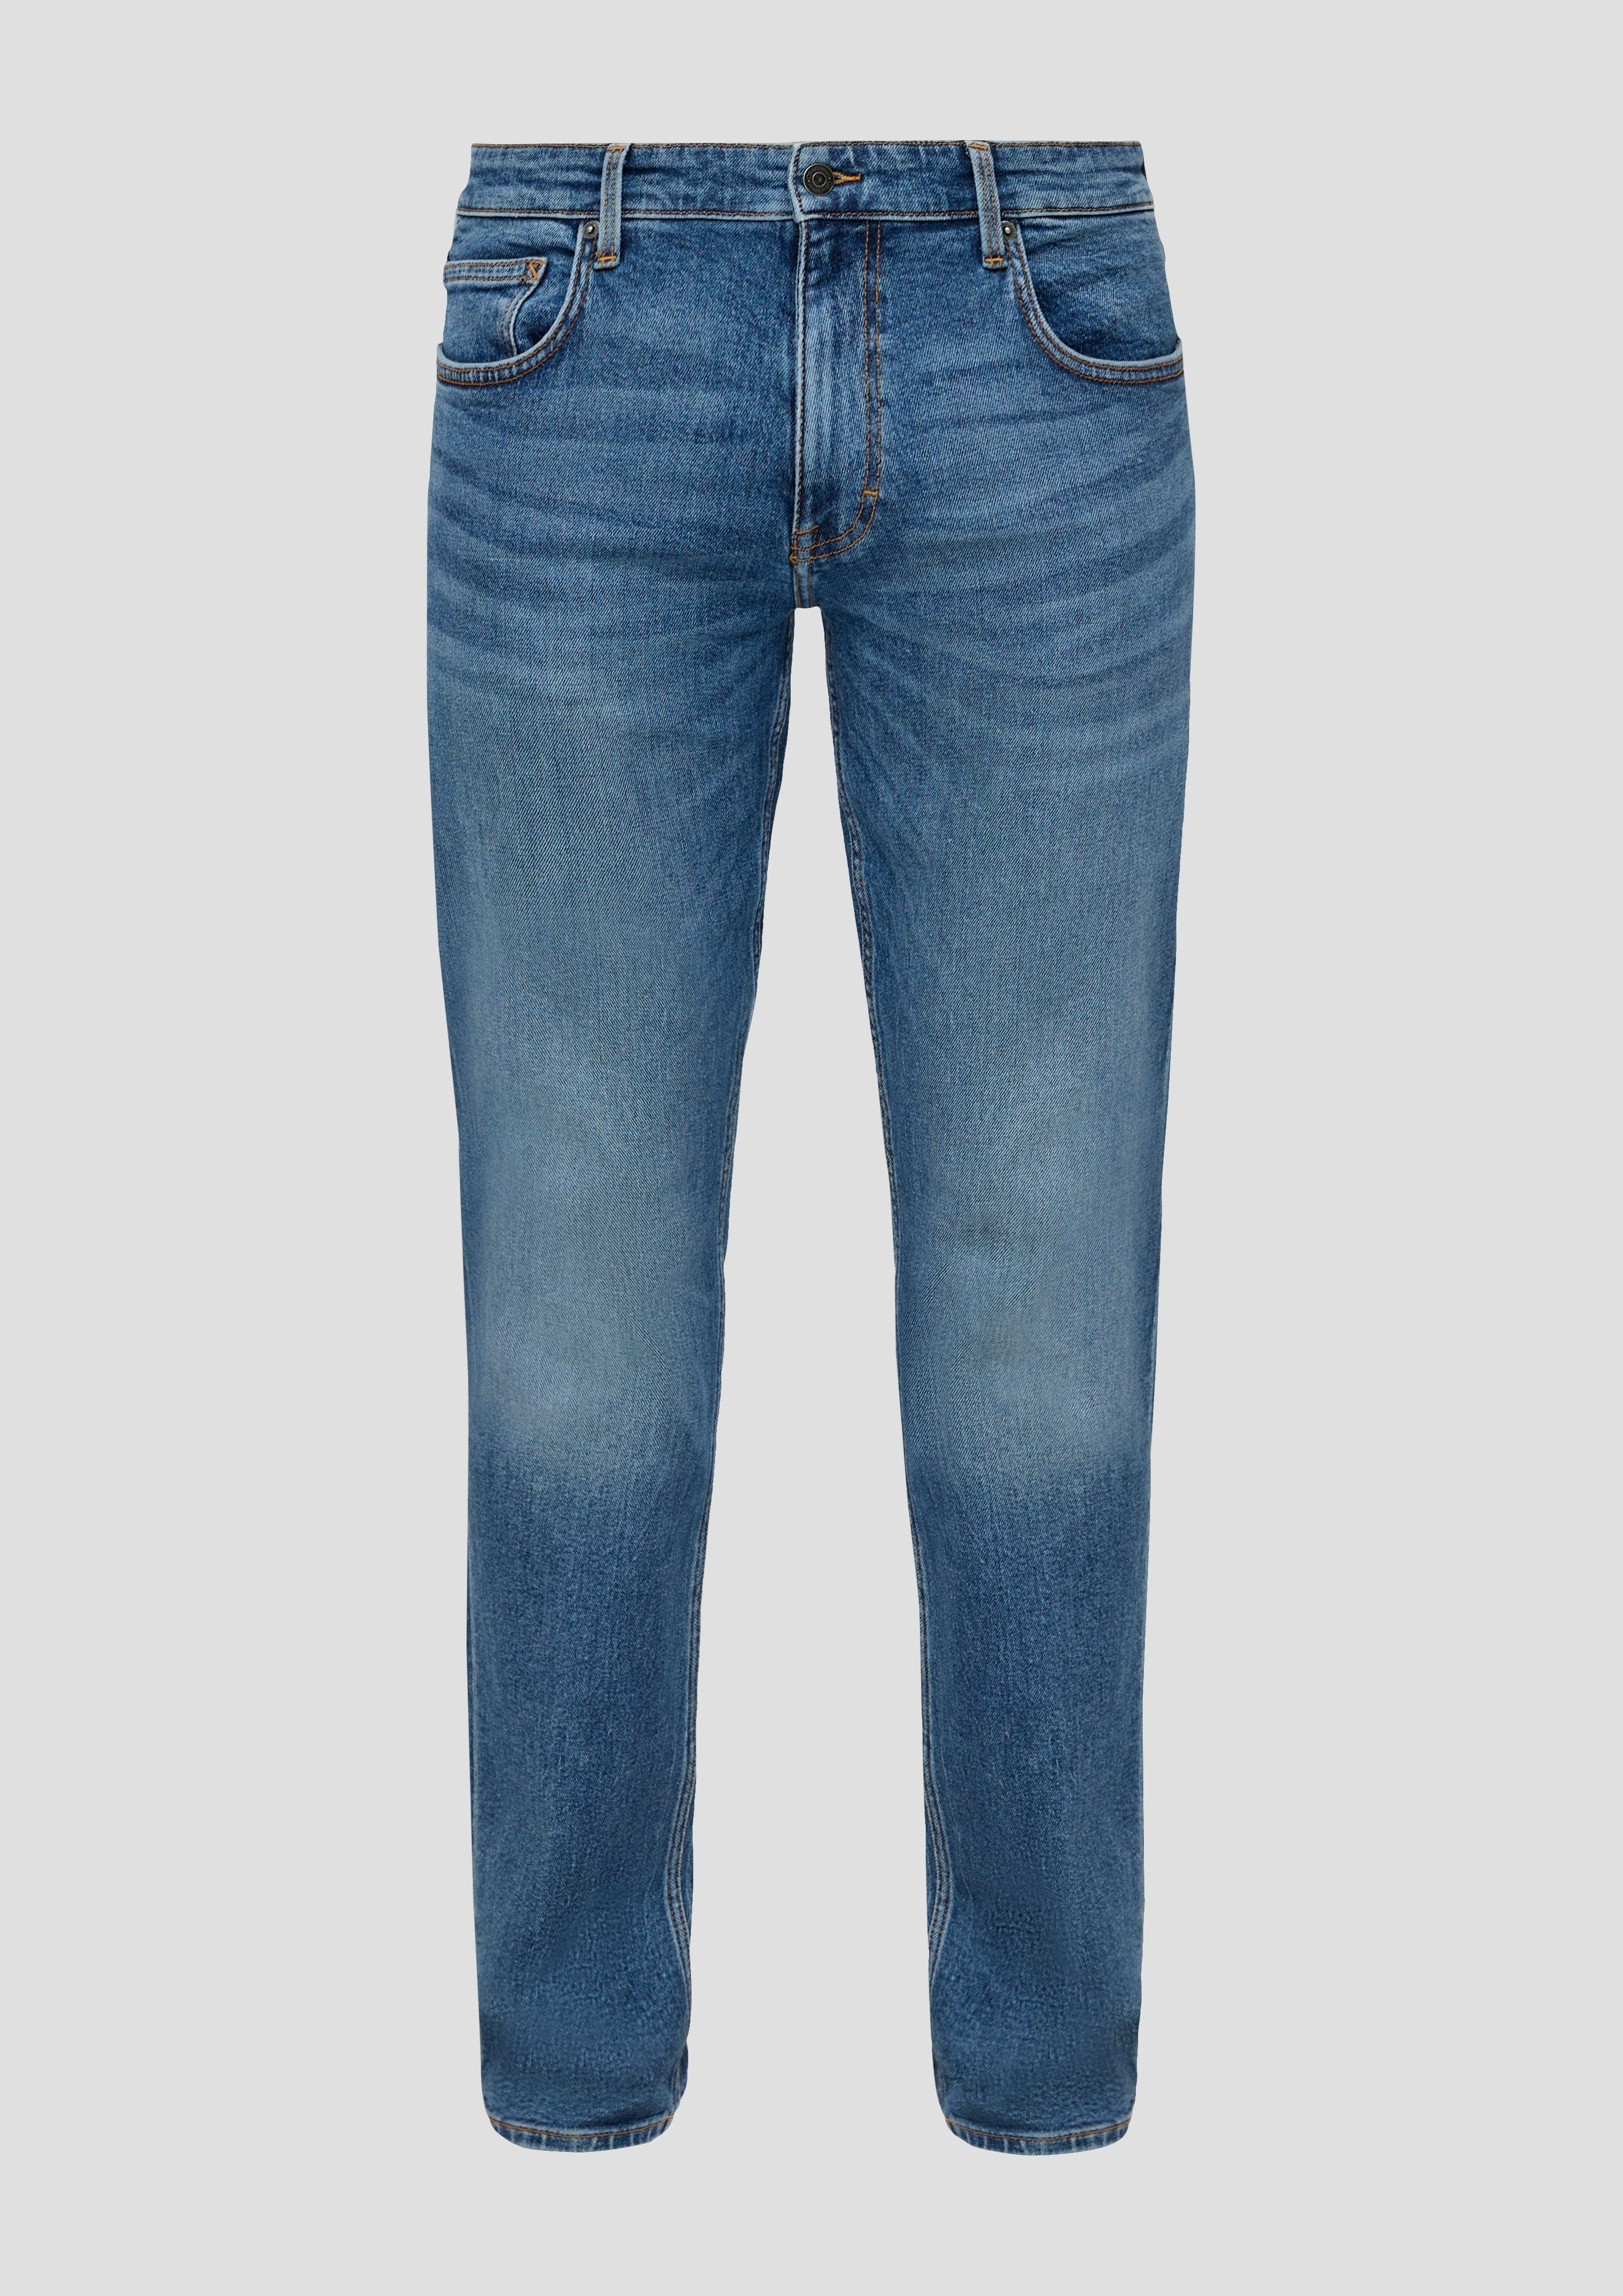 an blue QS Nahtdesign Jeans mit 34 den Bequeme Gesäßtaschen